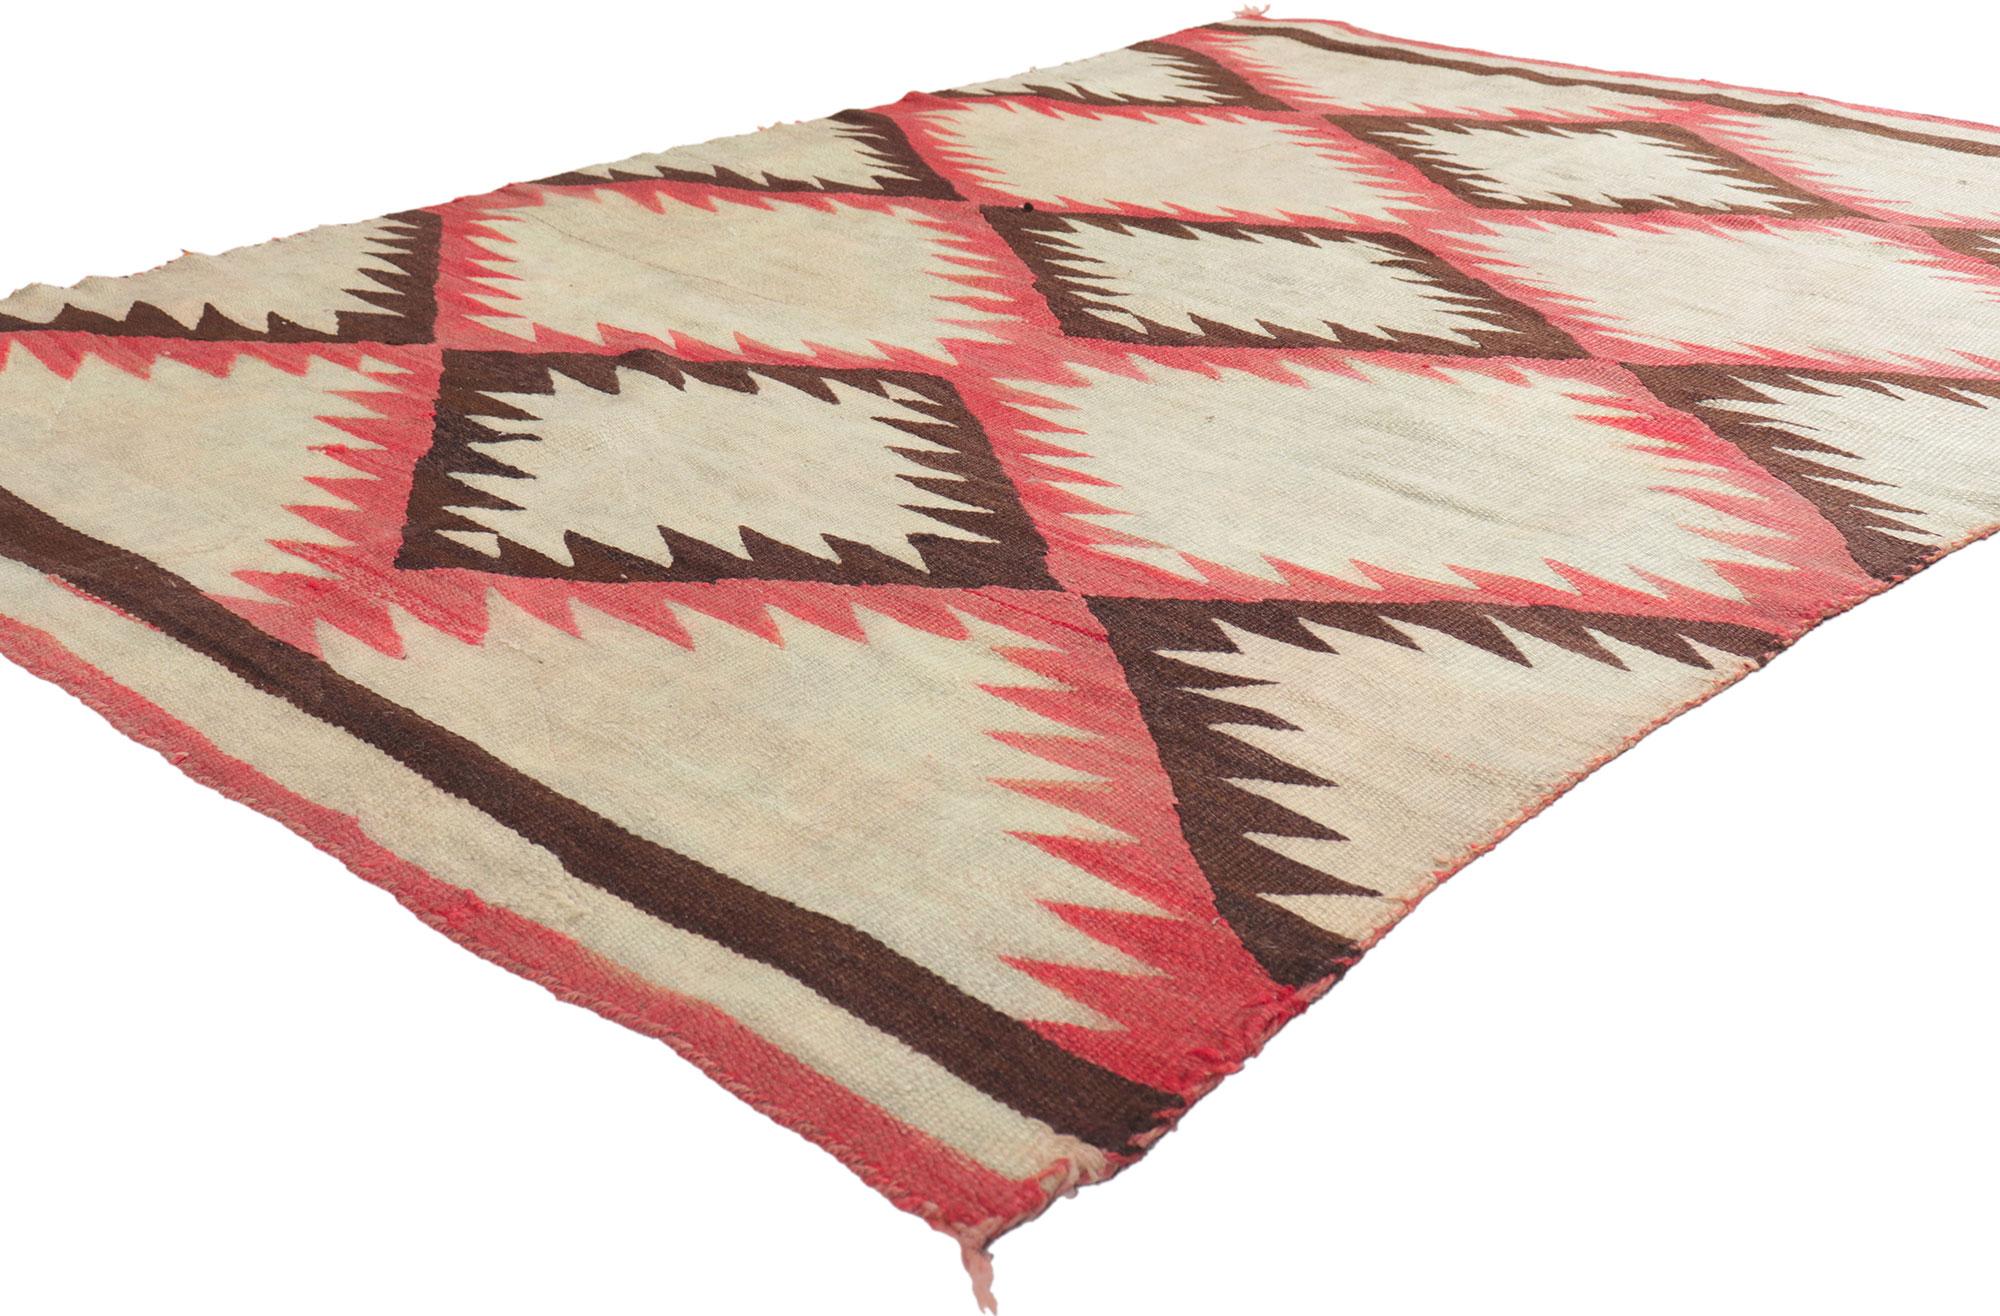 78429 Vintage eye dazzler navajo rug, 04'09 x 07'00. Avec ses détails et sa texture incroyables, ce tapis Navajo vintage tissé à la main est une vision captivante de la beauté tissée. L'étonnant motif Eye Dazzler et les couleurs vives de ce tapis